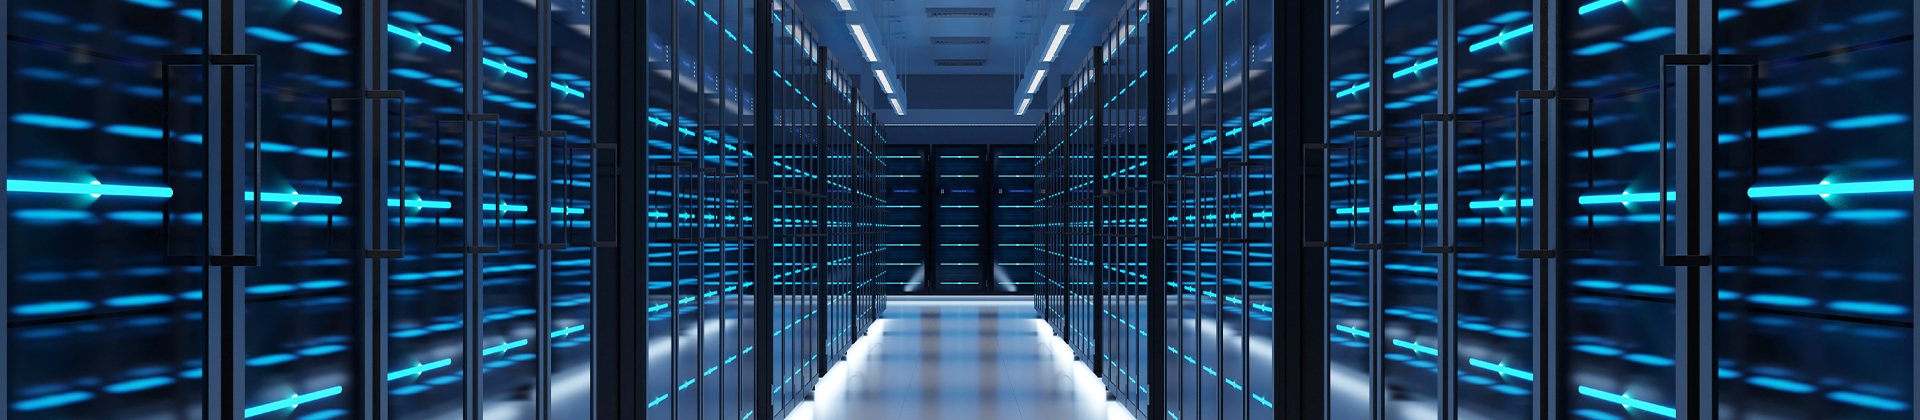 Imagen amplia de una sala de servidores de un centro de datos